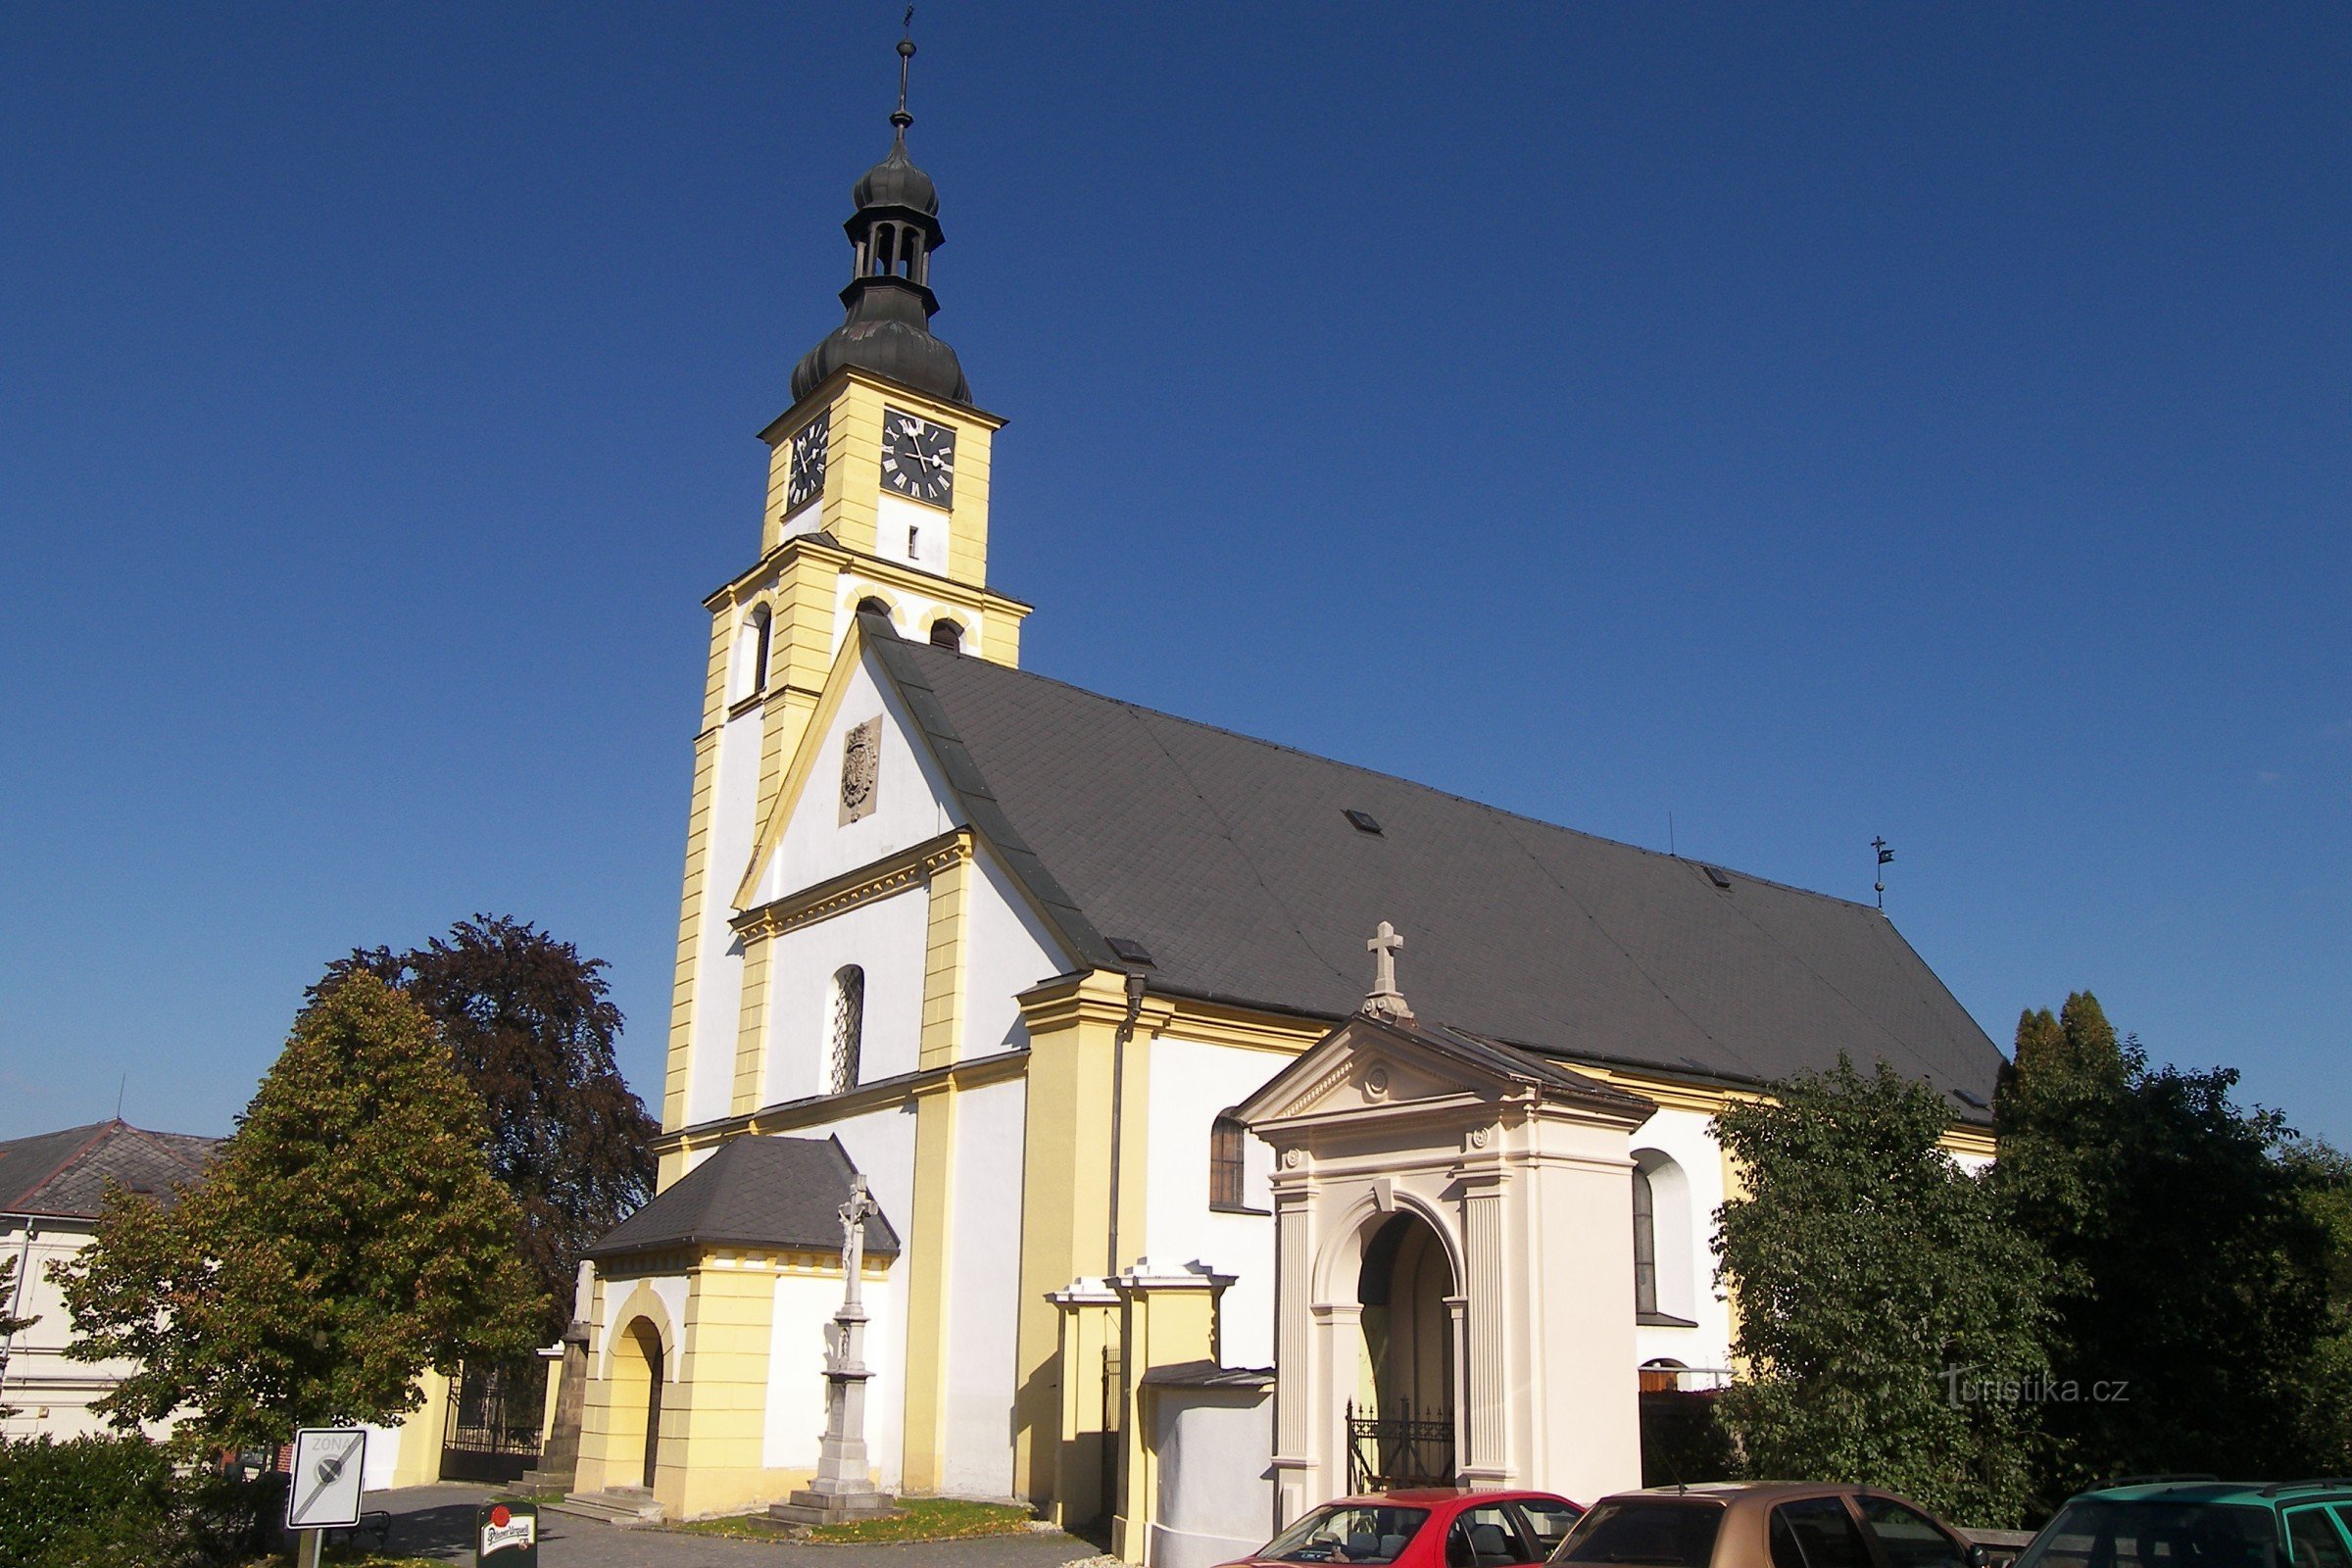 Церква св. Петра і Павла Градец над Мором.